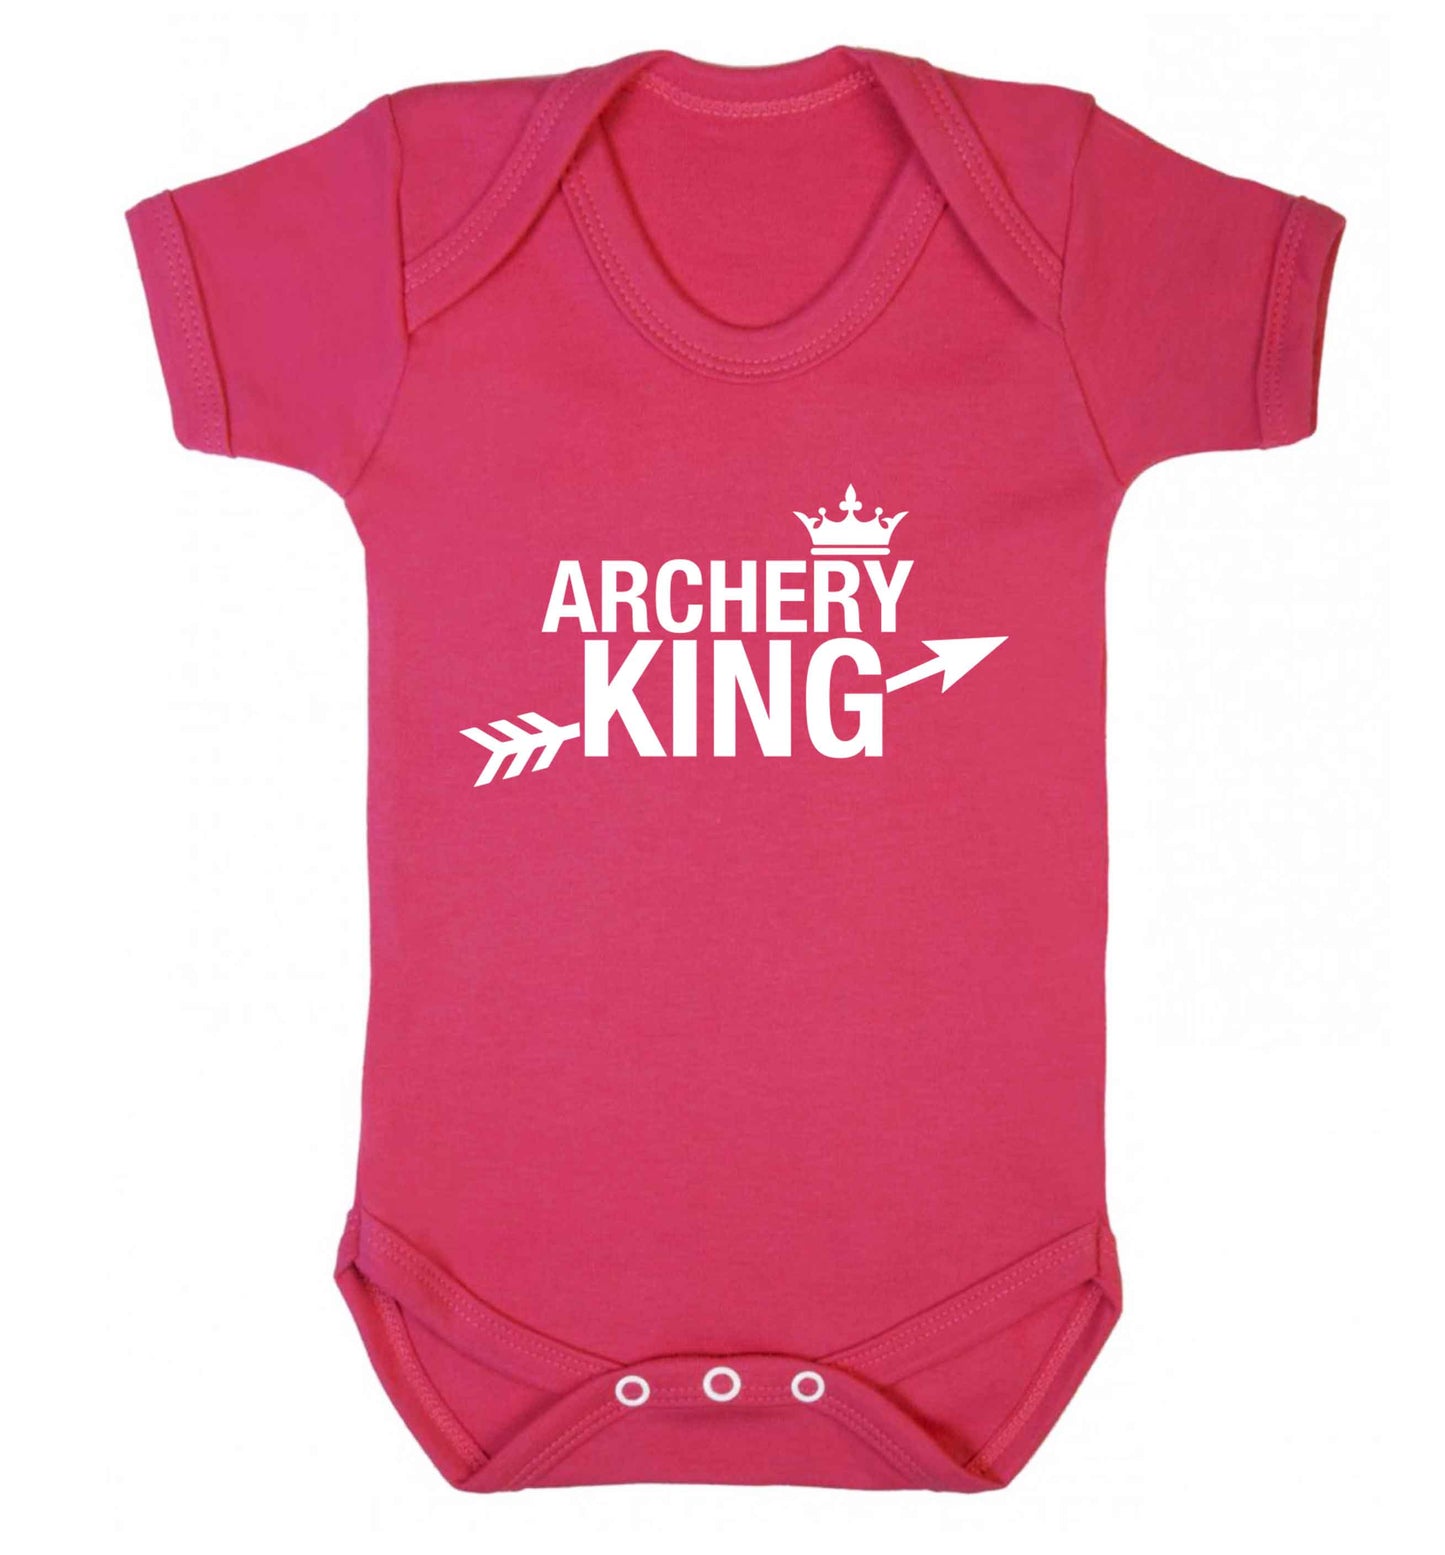 Archery king Baby Vest dark pink 18-24 months